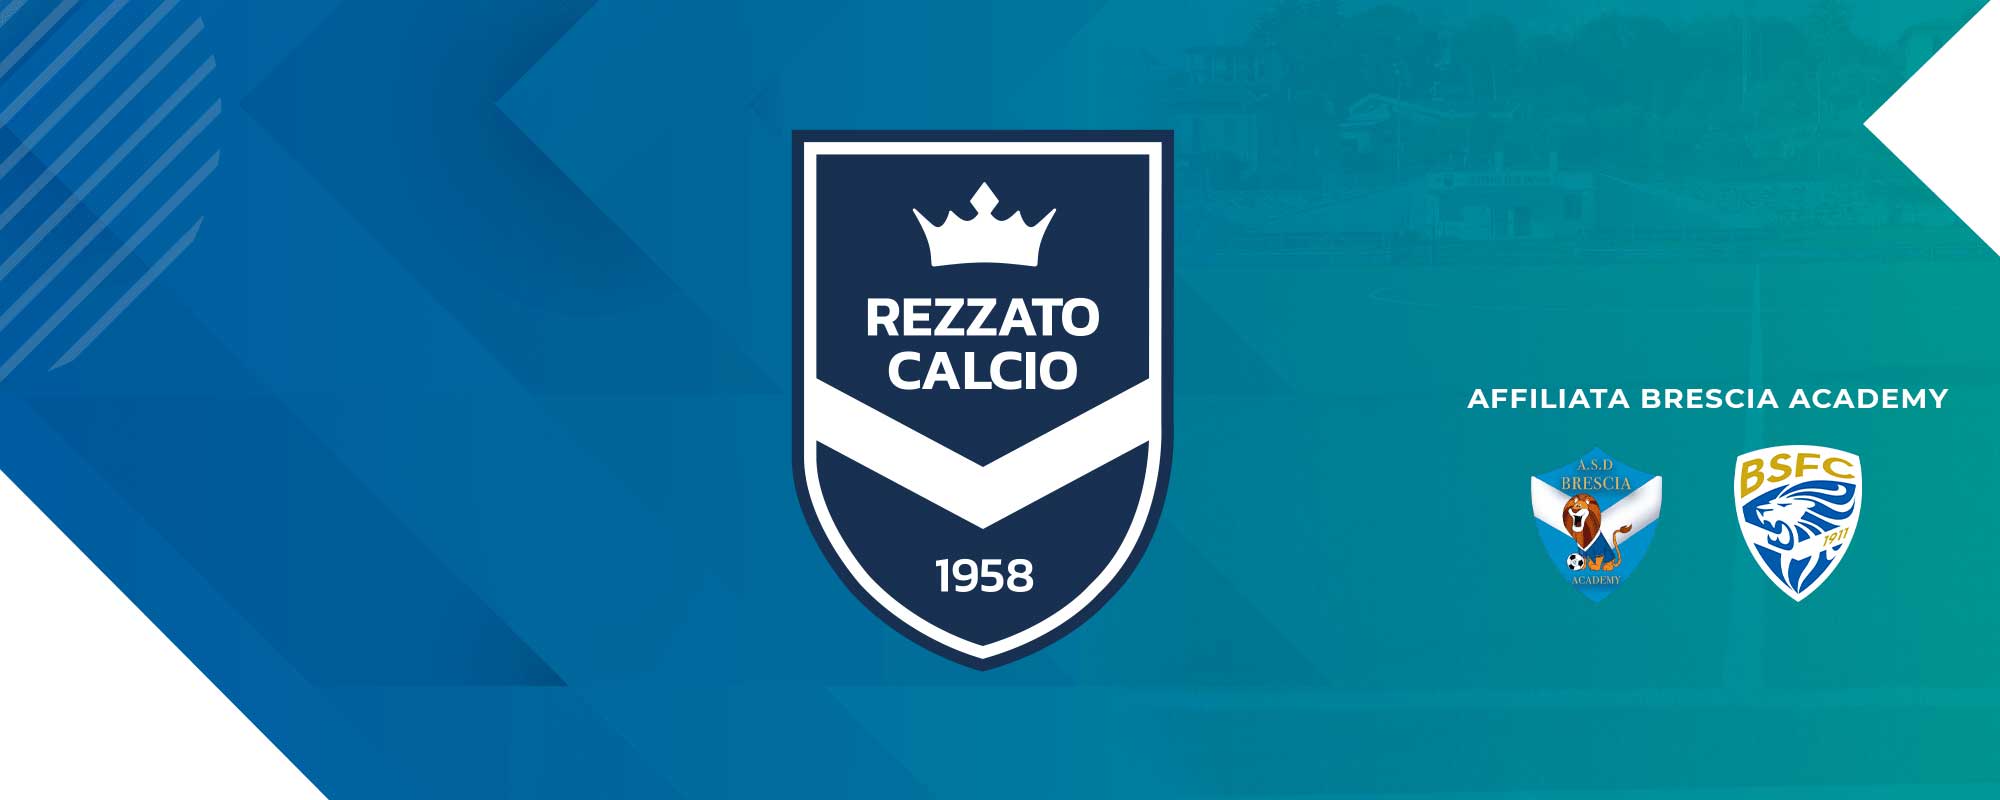 S.C. REZZATO CALCIO